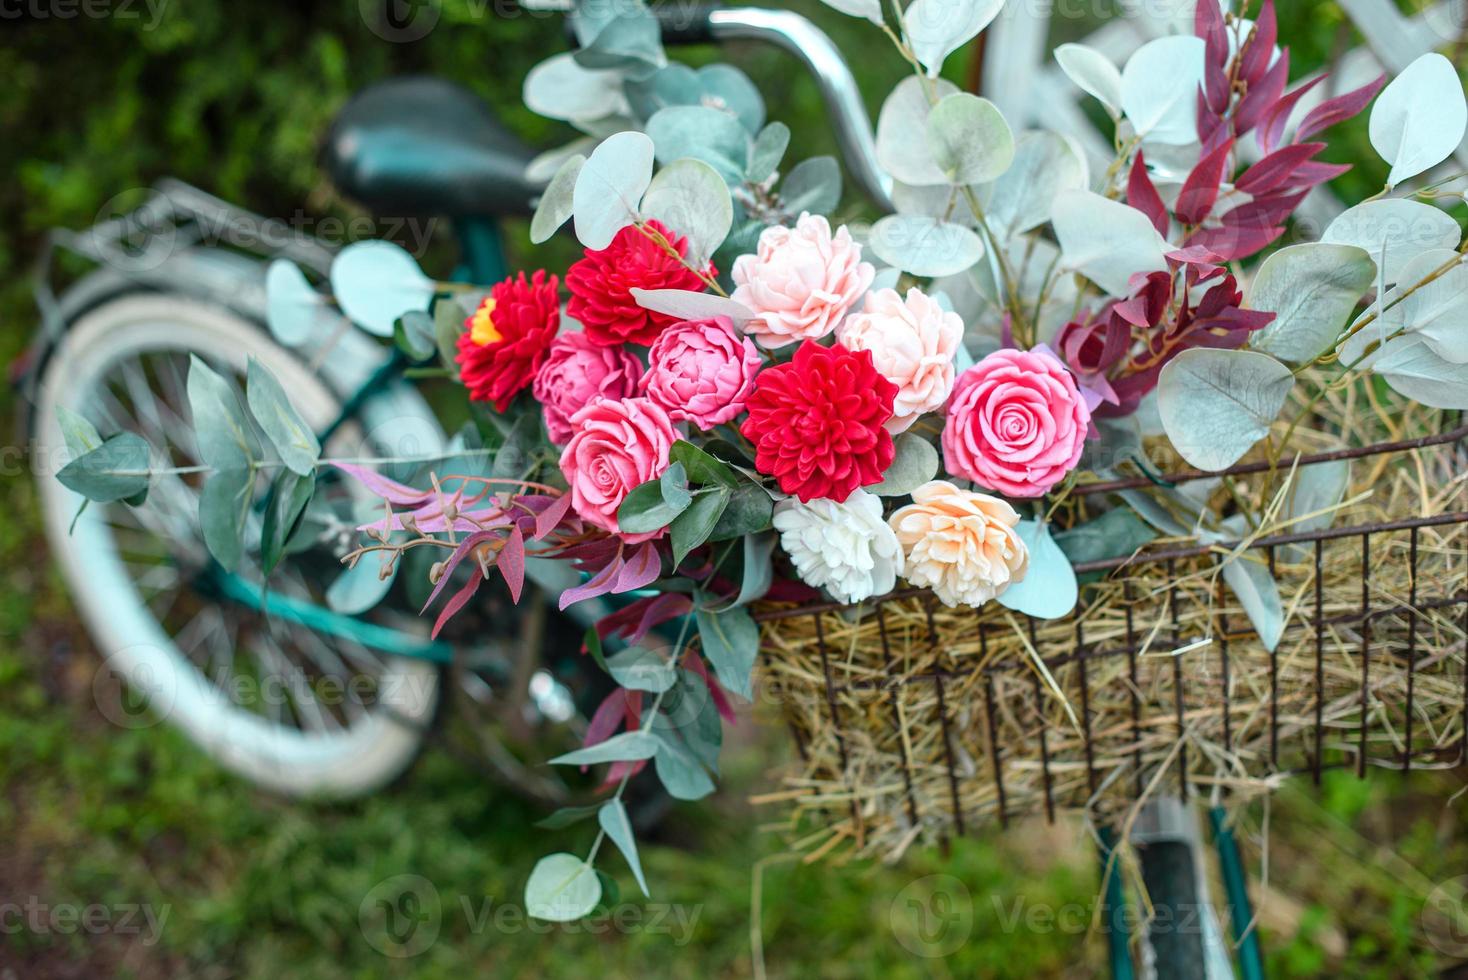 schönes Fahrrad mit Blumen in einem Korb steht auf einer Allee foto